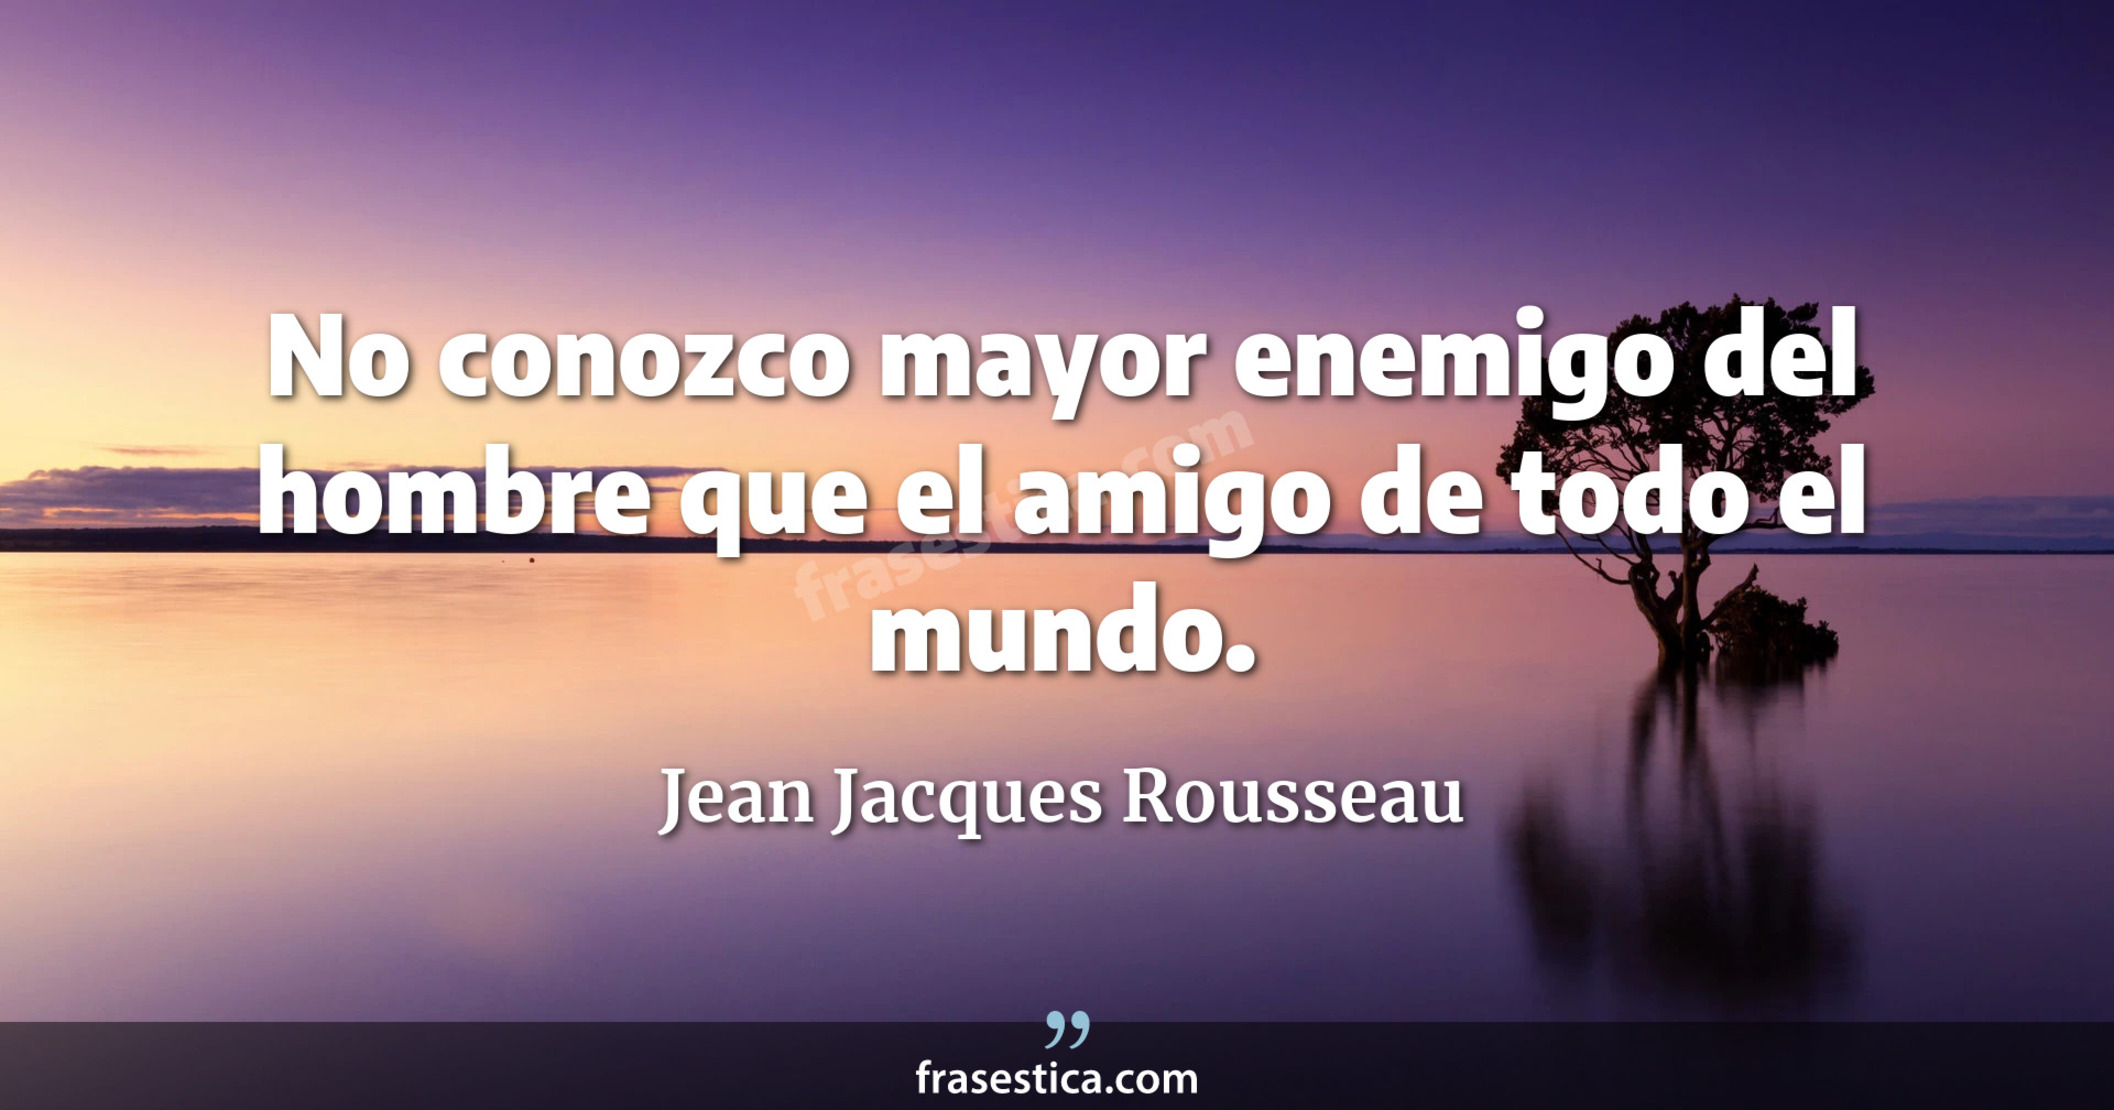 No conozco mayor enemigo del hombre que el amigo de todo el mundo. - Jean Jacques Rousseau